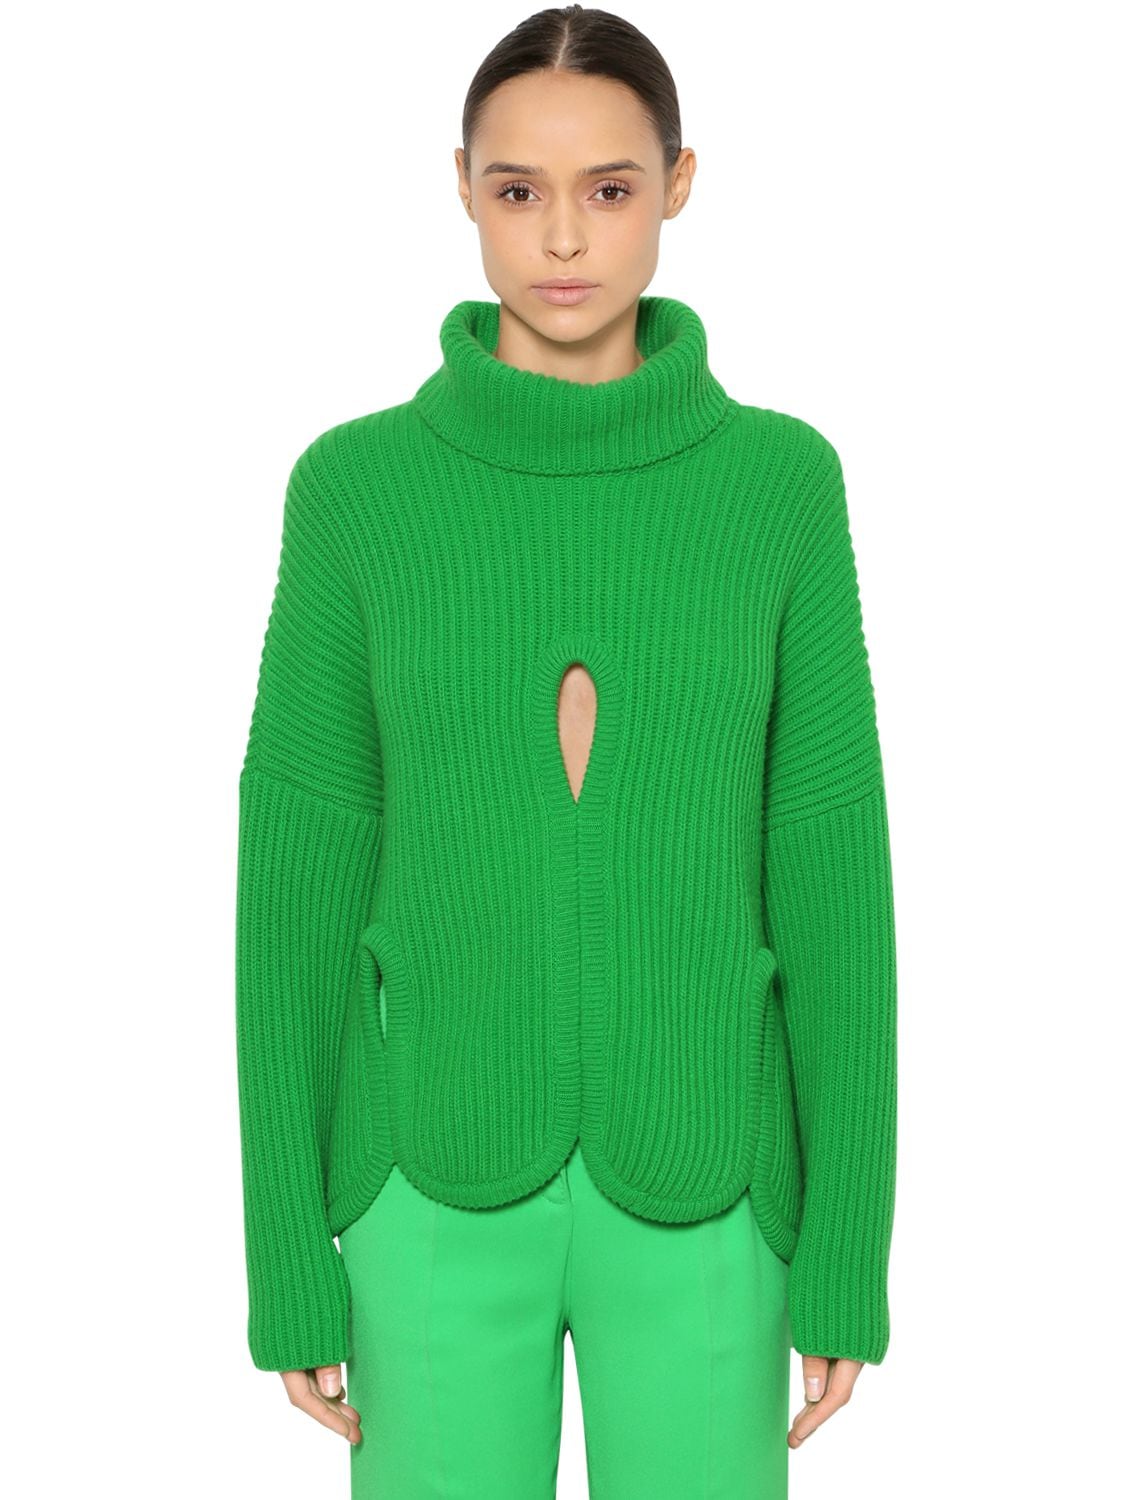 Antonio Berardi Wool Turtleneck Sweater W/ Cutouts In Green